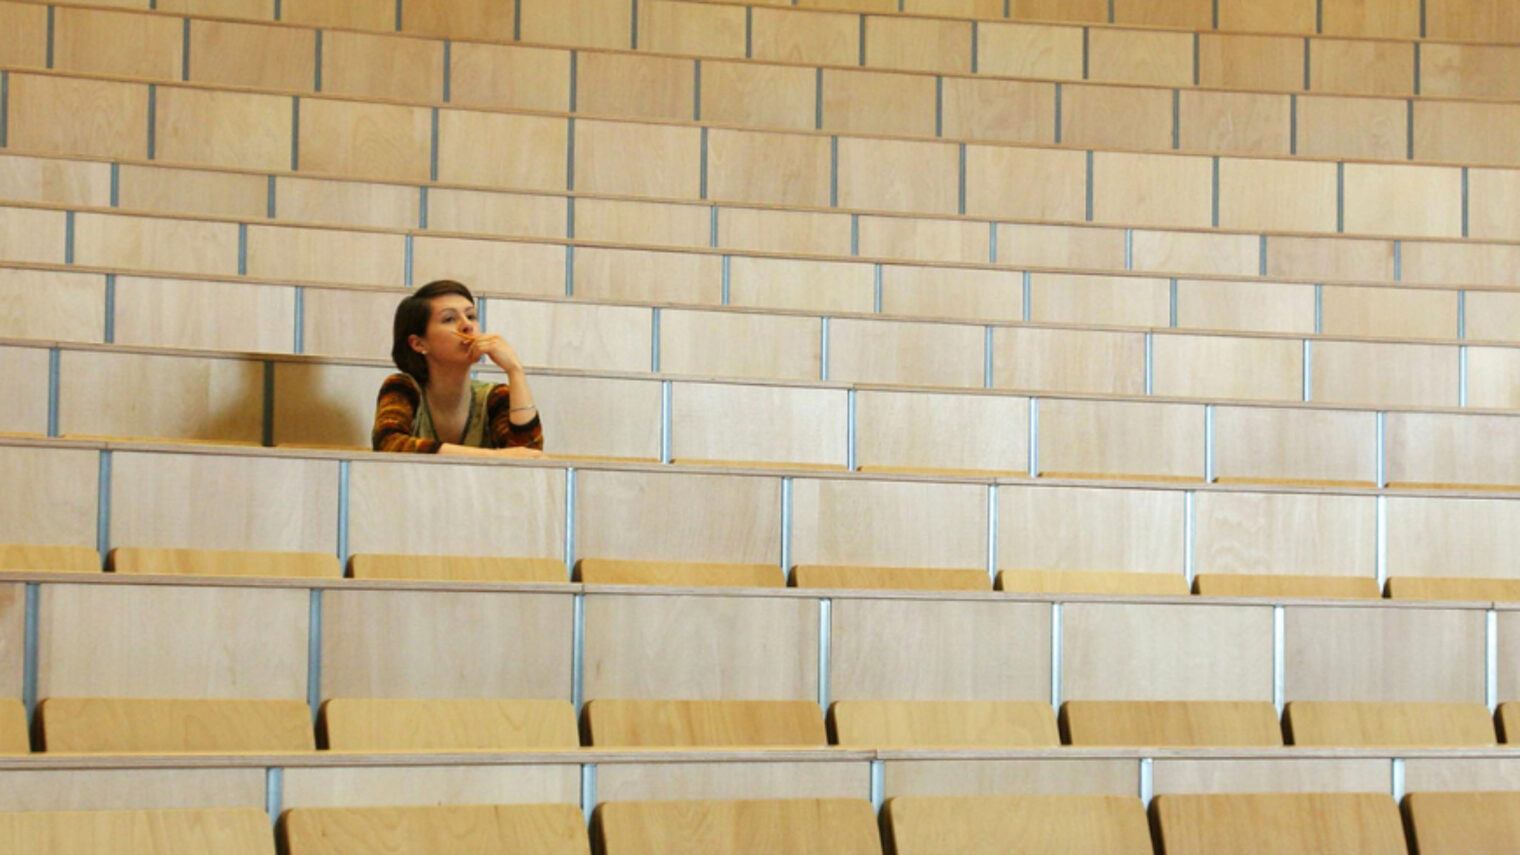 Eine junge Person sitzt alleine in einem Hörsaal und blickt nachdenklich nach vorne.